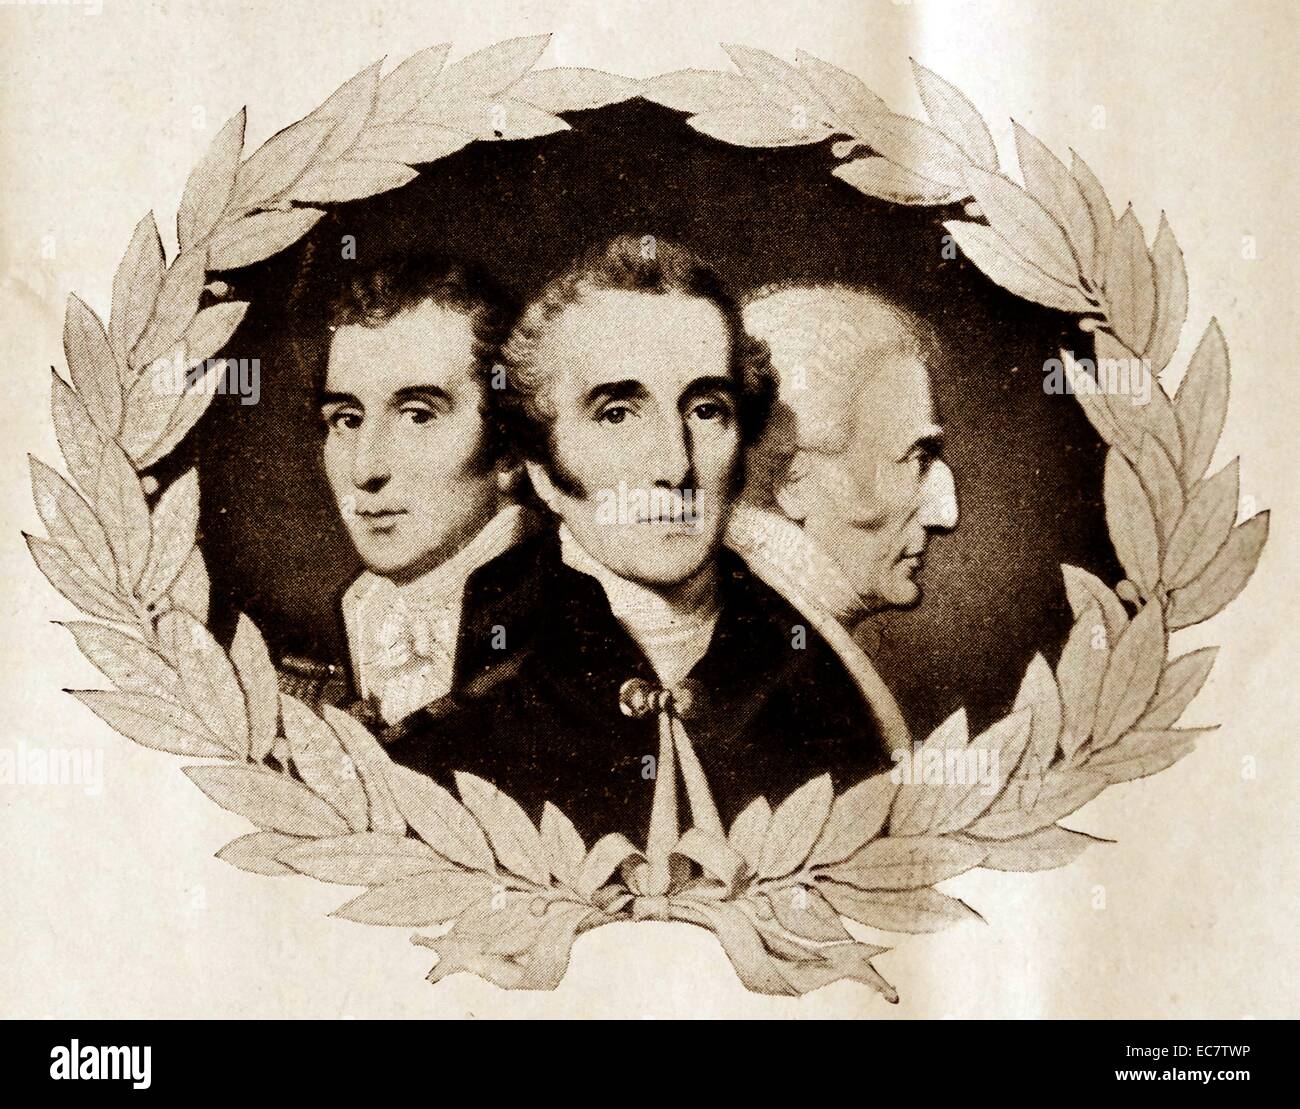 Trois face portrait du duc de Wellington. Le Maréchal Arthur Wellesley, 1er duc de Wellington ; (1769 - 14 septembre 1852) ; soldat britannique et homme d'État Banque D'Images